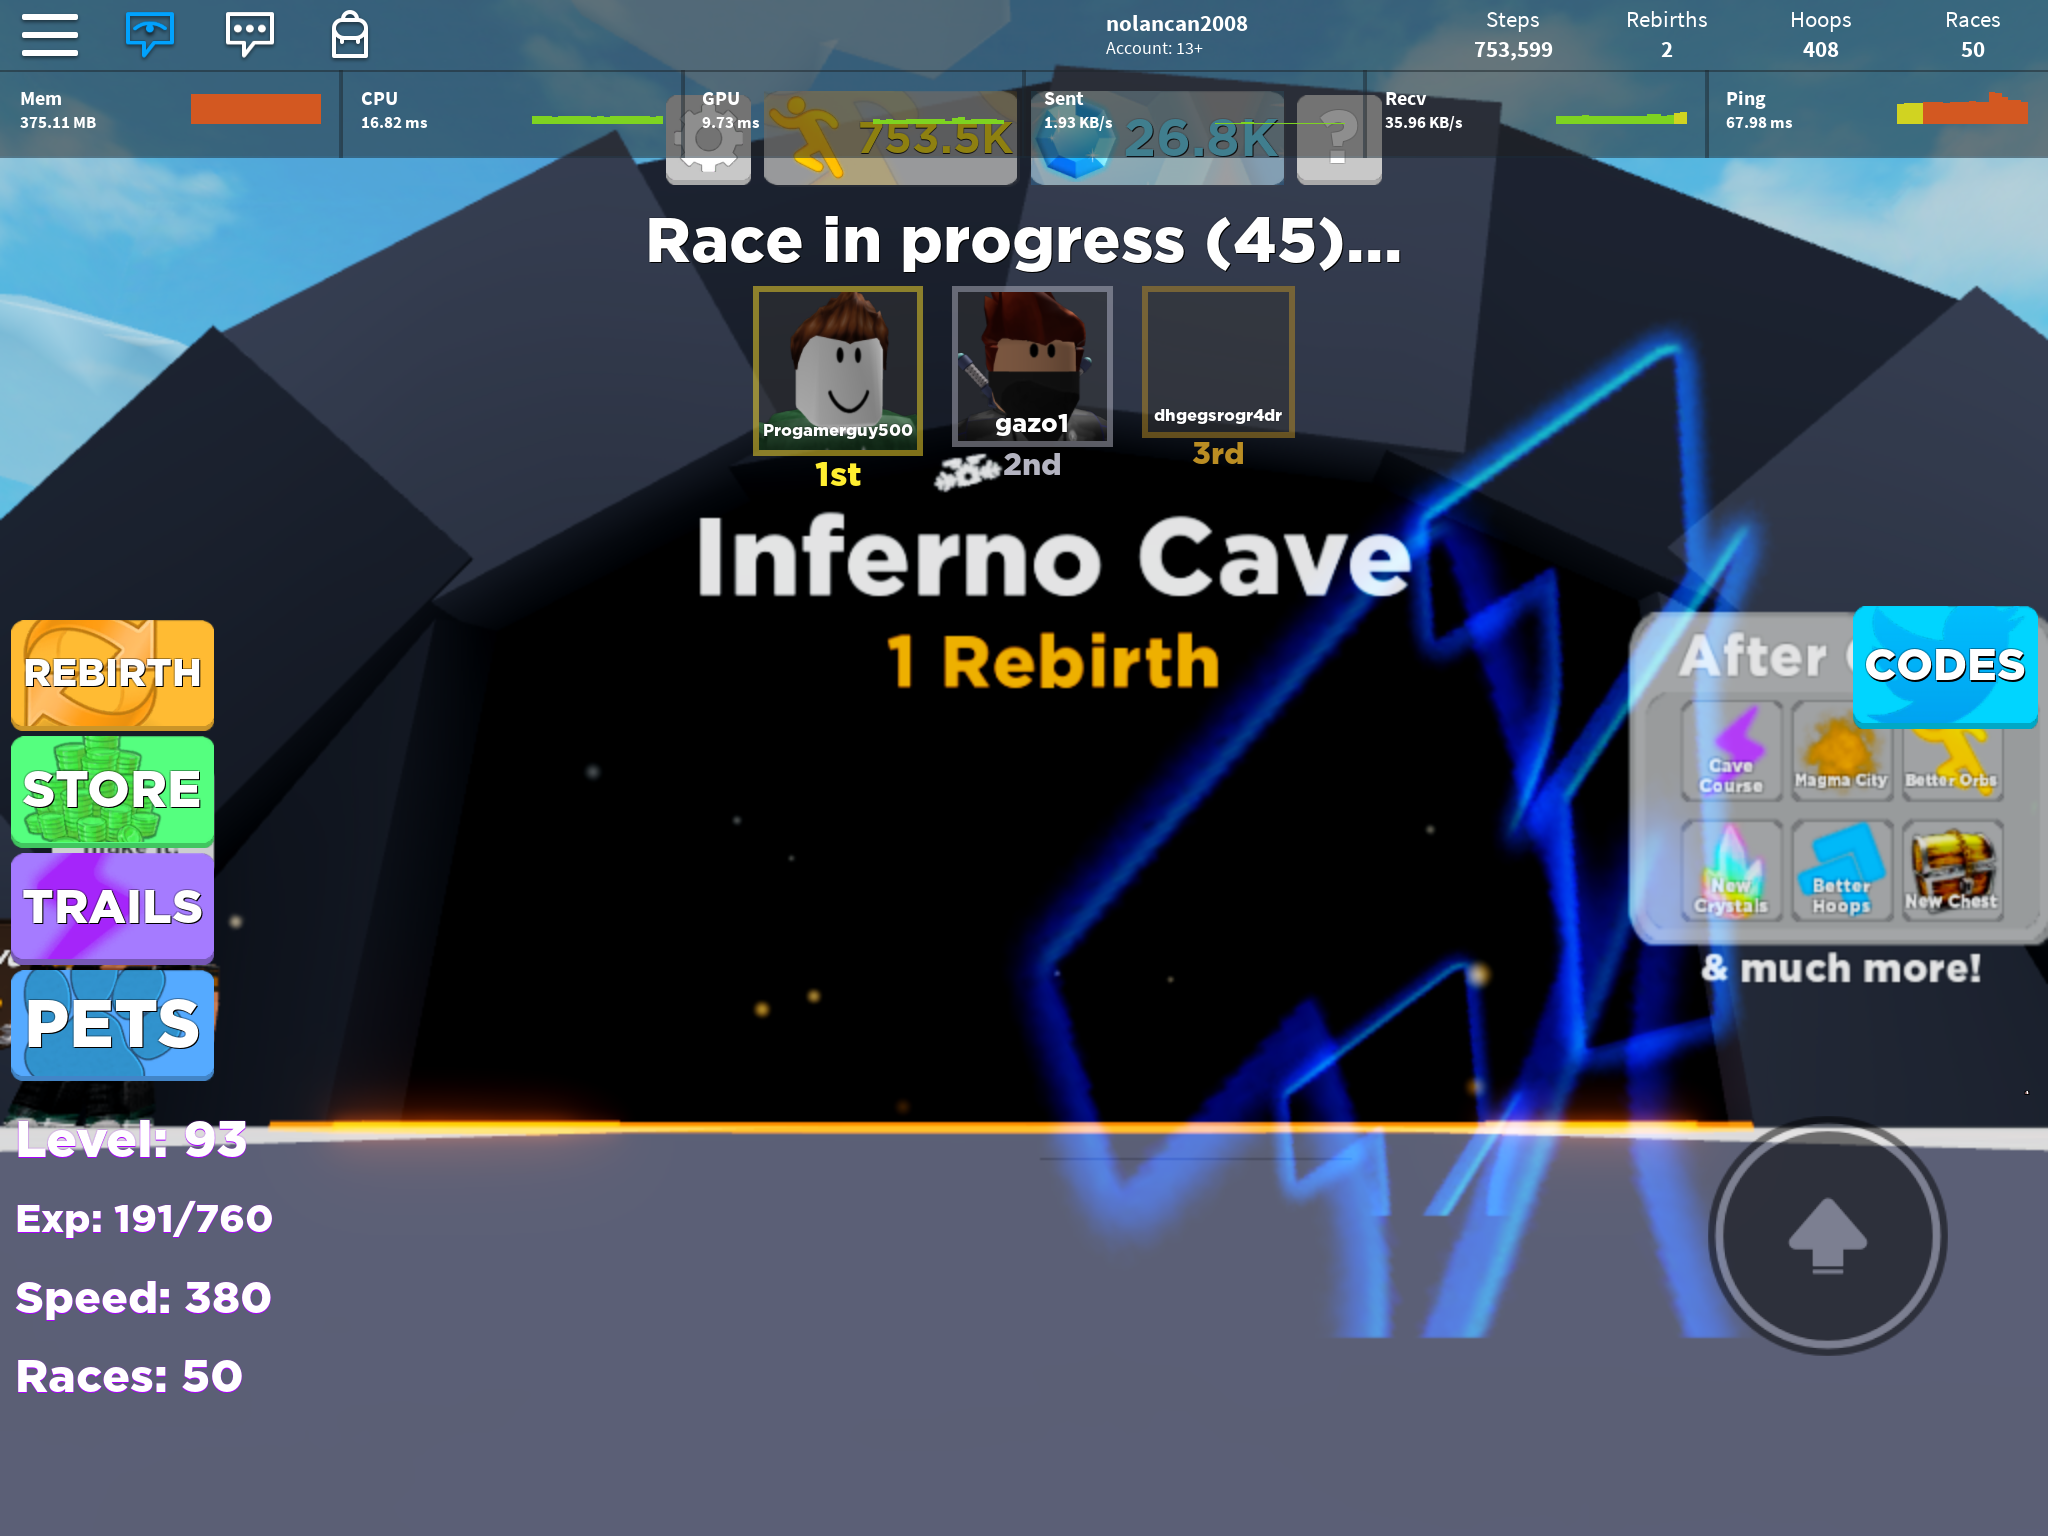 Inferno Cave Legends Of Speed Wiki Fandom